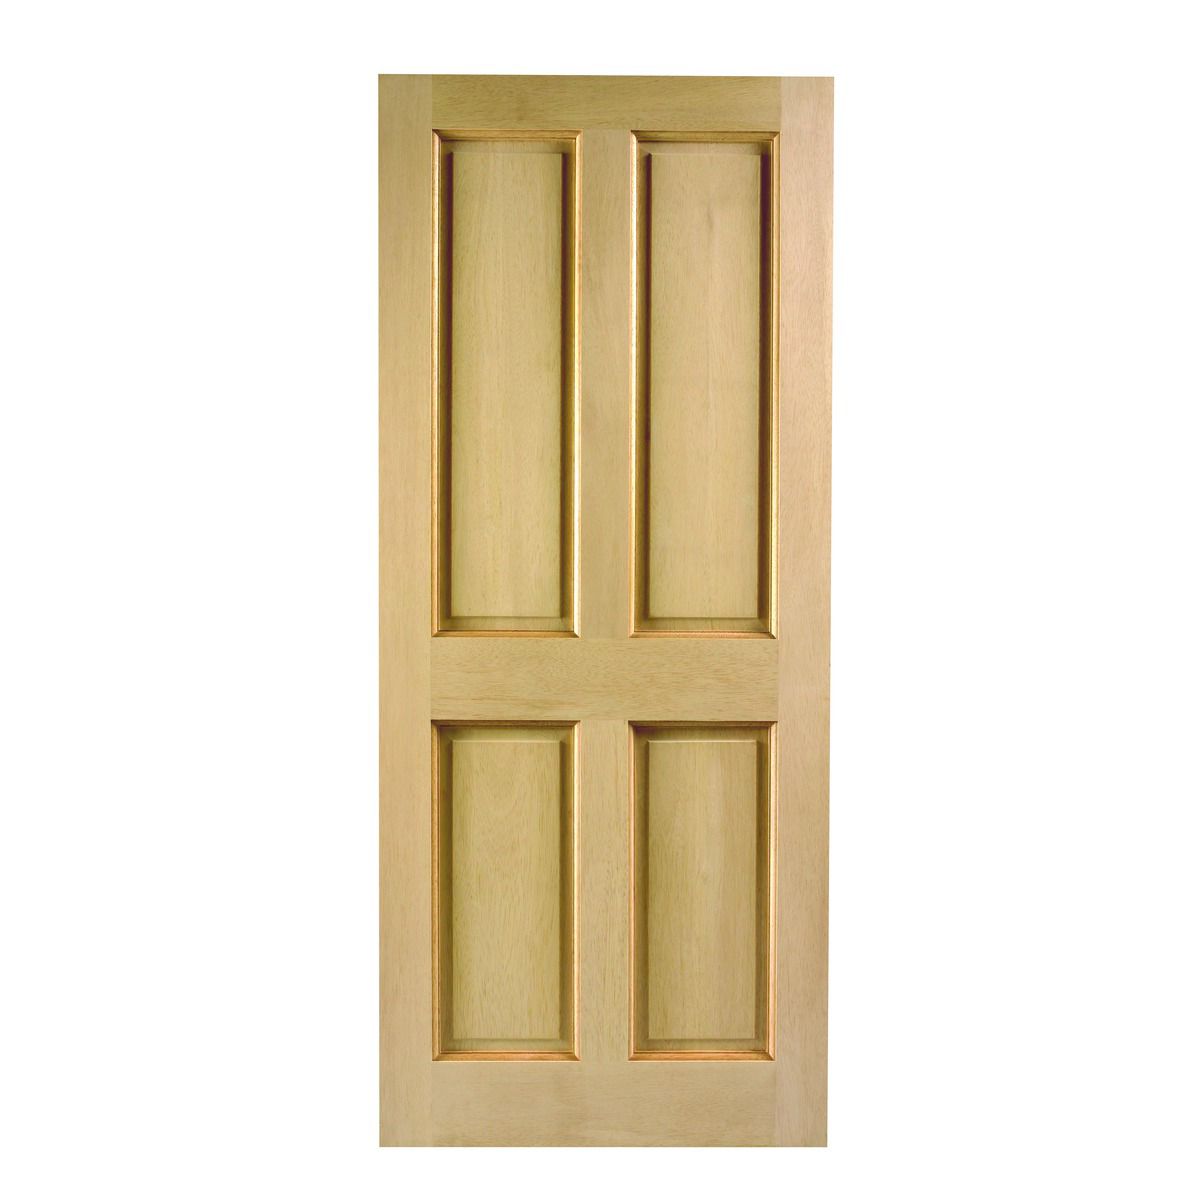 Image of Wickes London External 4 Panel Oak Door - 2032 x 813mm